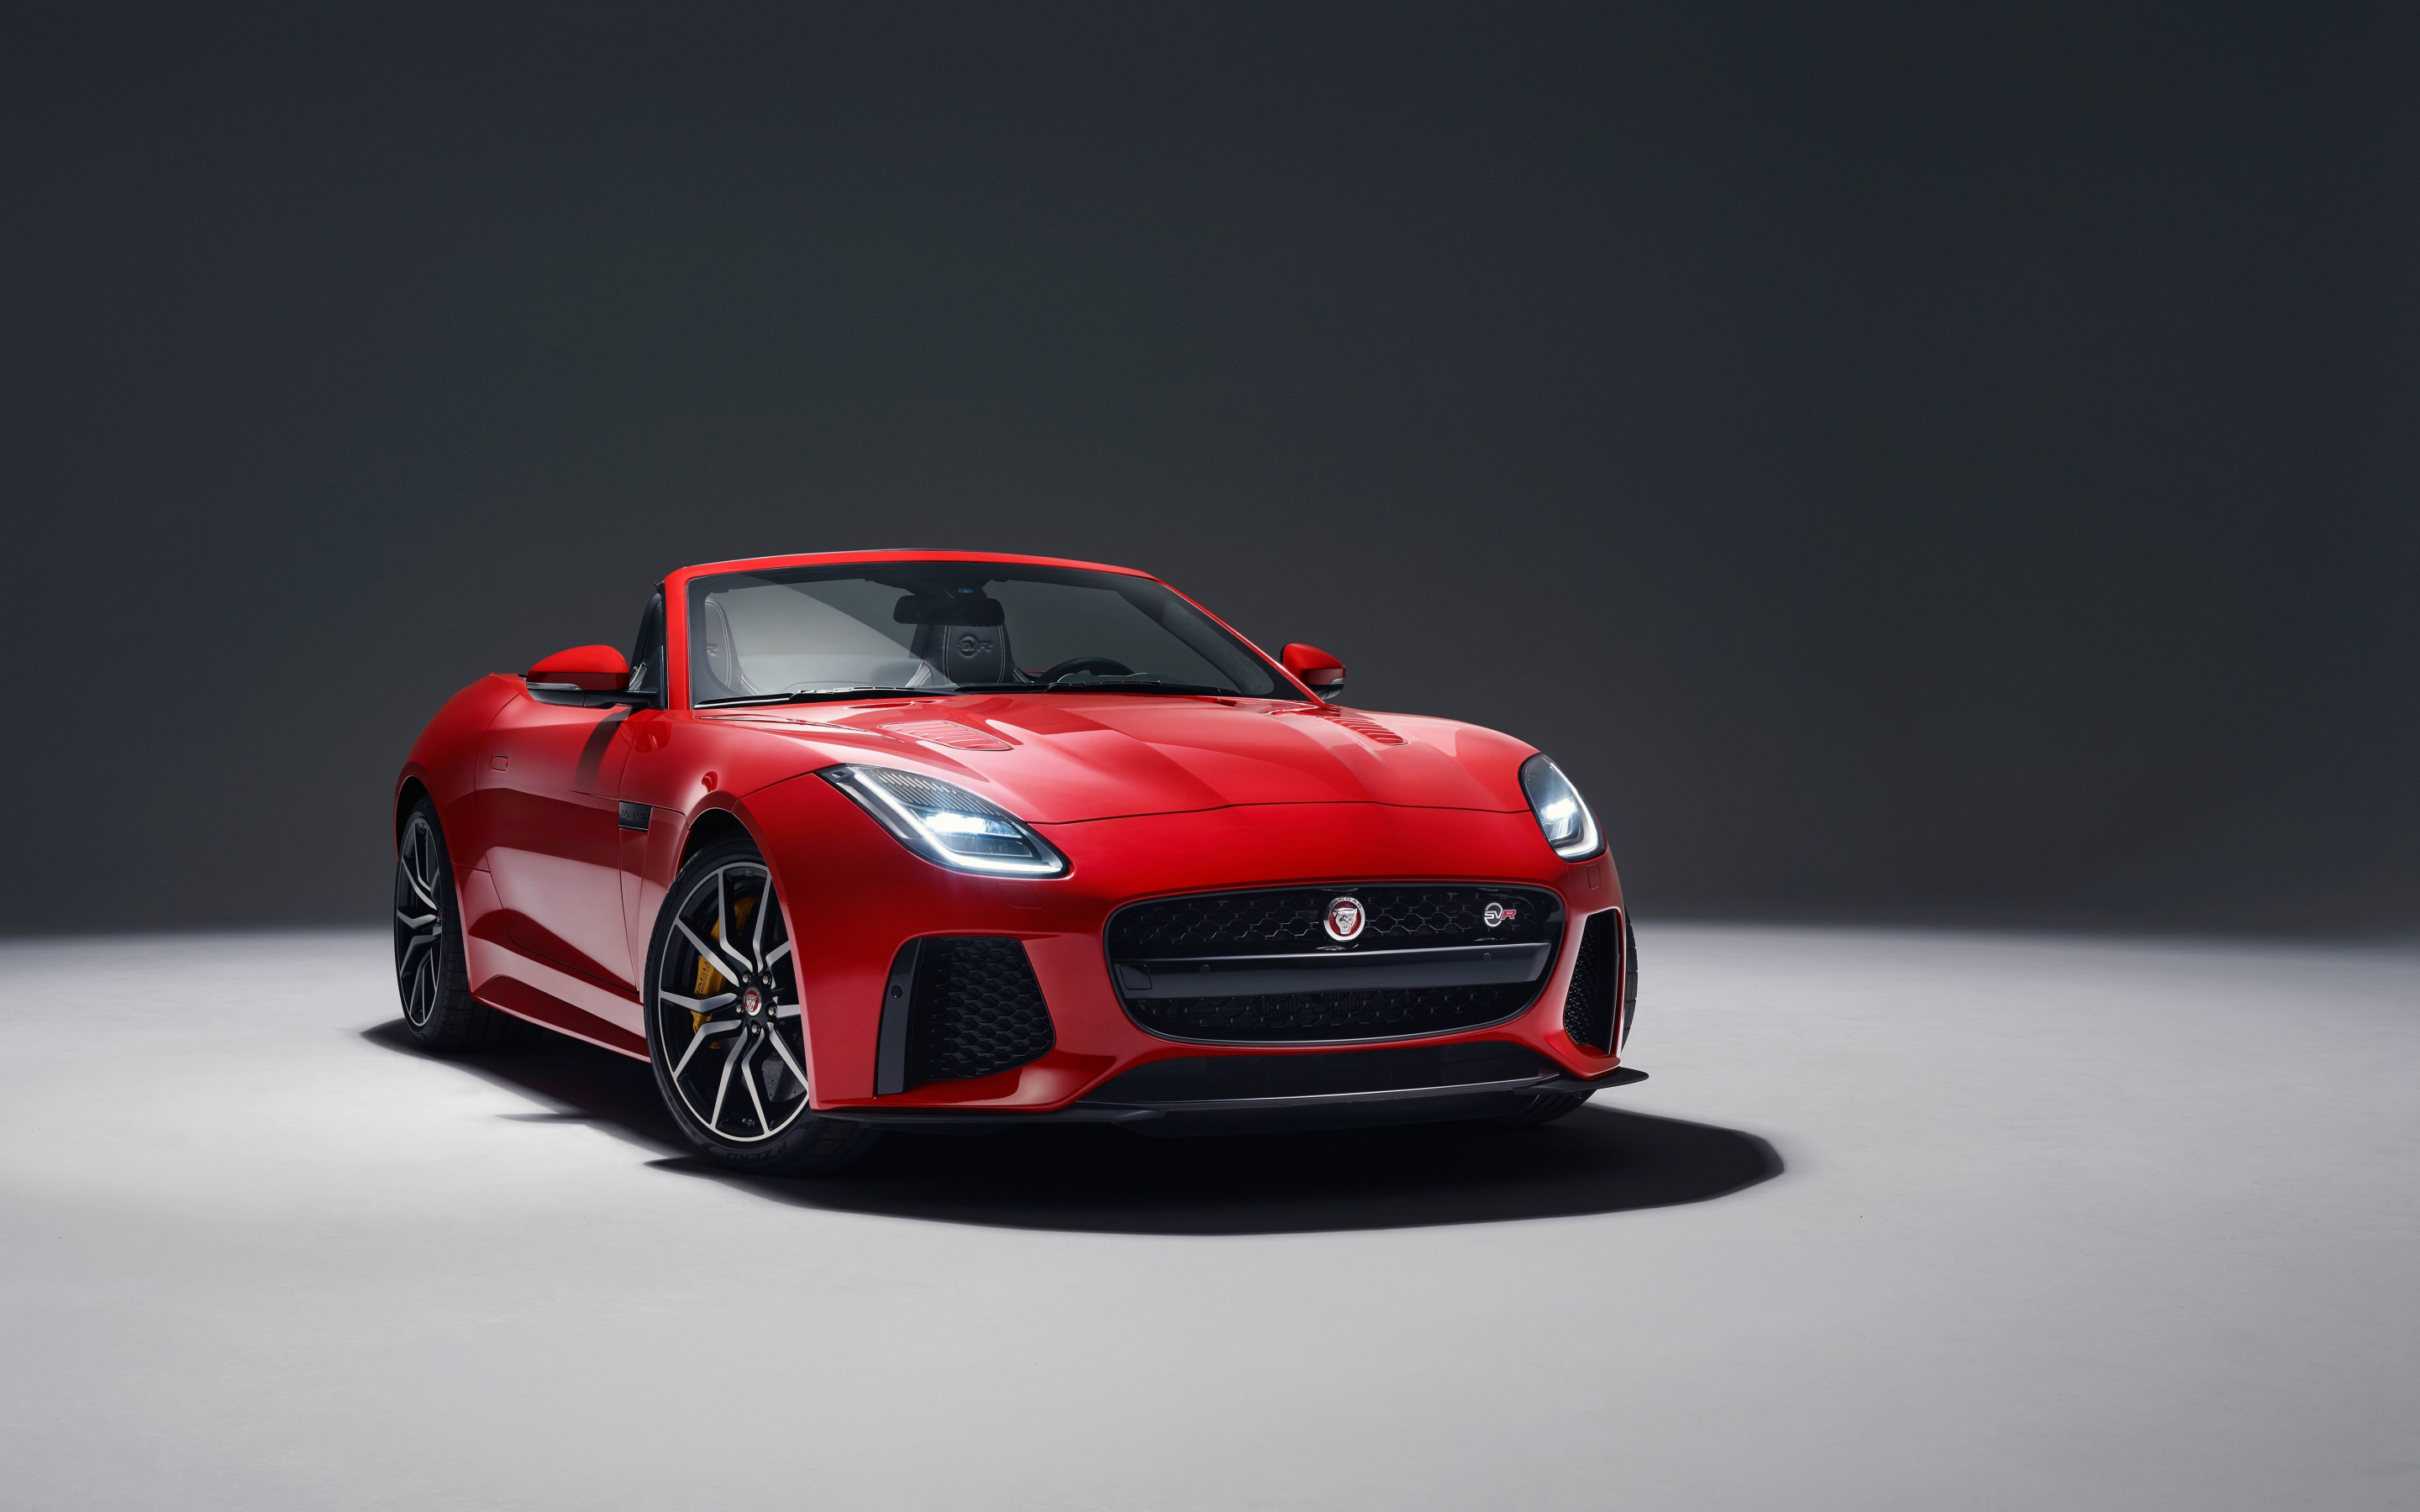 2018, Jaguar F-TYPE SVR, red, front, 2880x1800 wallpaper